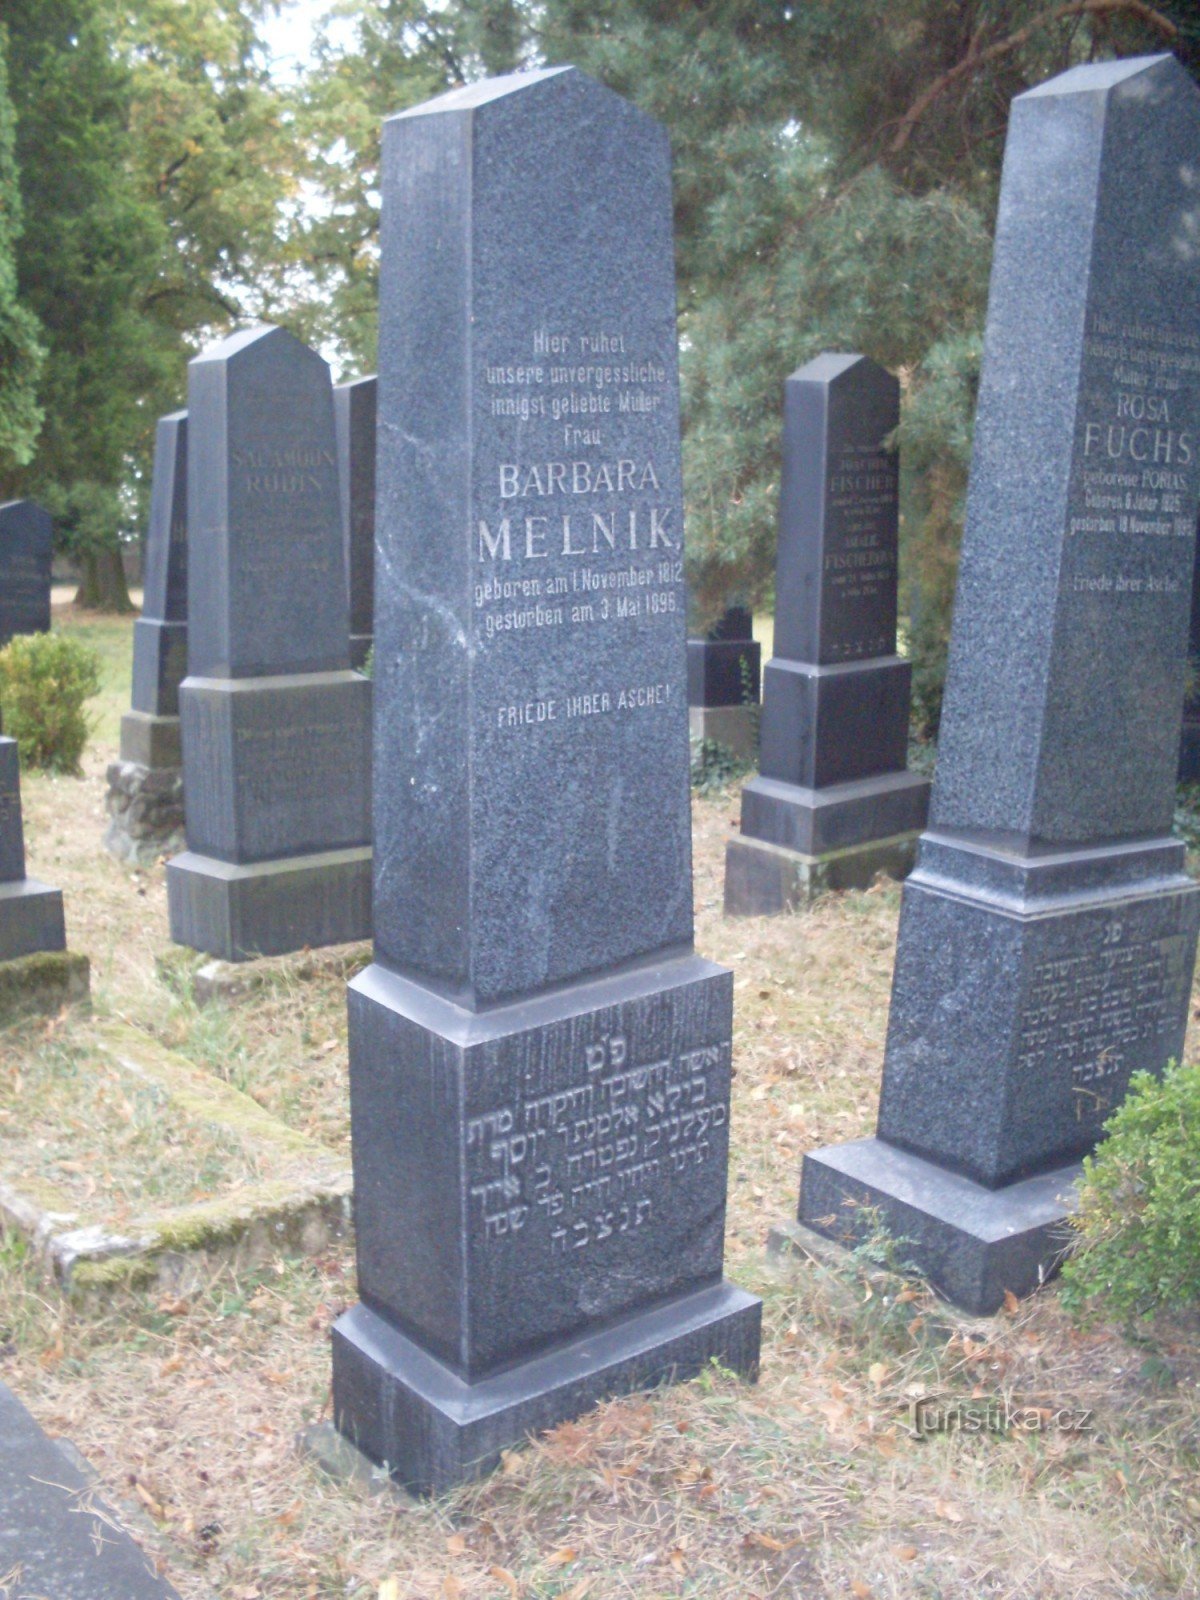 Het graf van Barbora Melnik, een vrouw die vanuit Mělník . naar Boleslav kwam